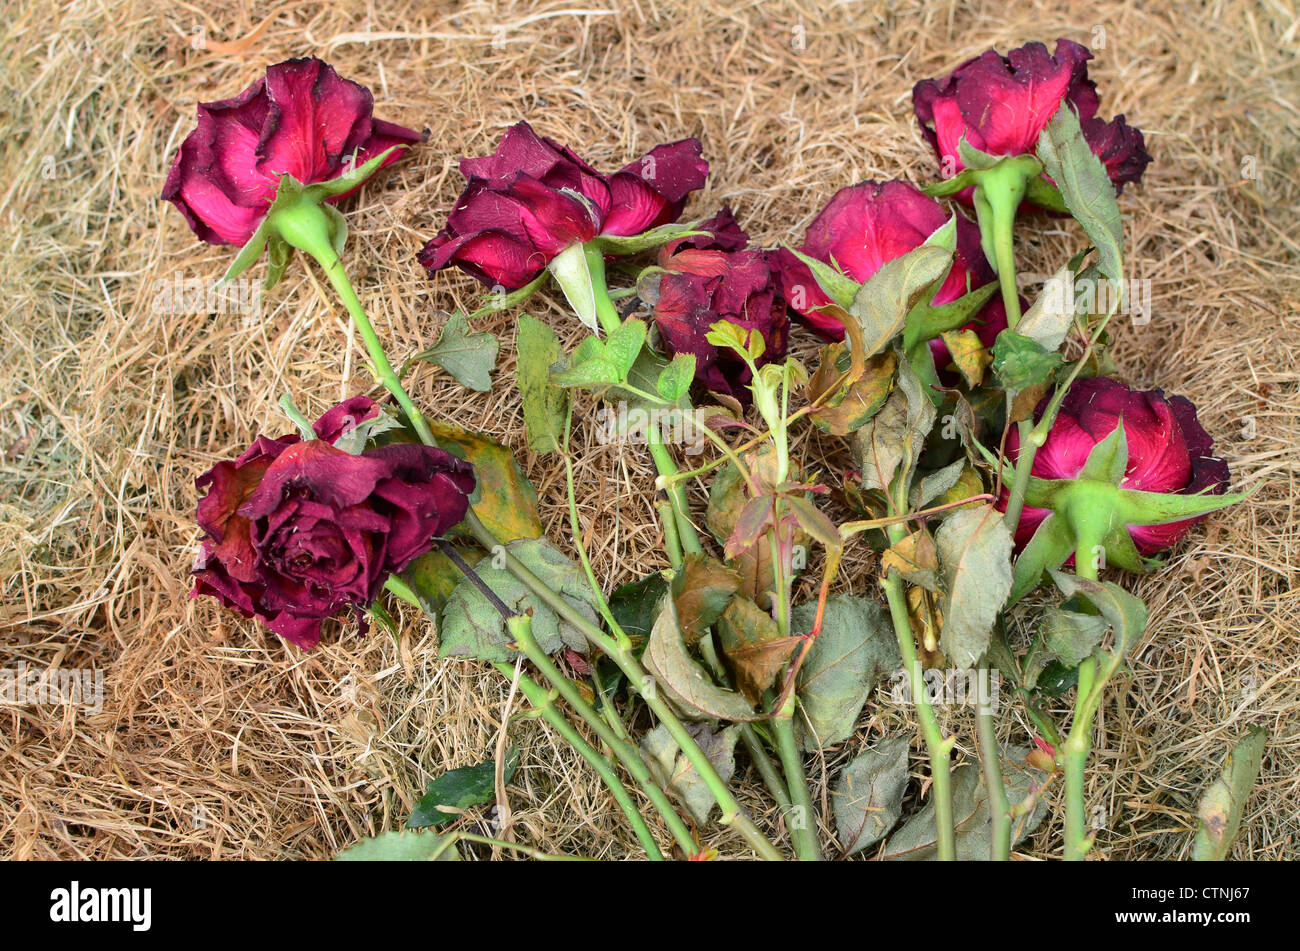 Im sterben liegend auf einem Haufen trockenen Grases Stecklinge - als Symbol für Rosen fehlgeschlagen Romantik Stockfoto